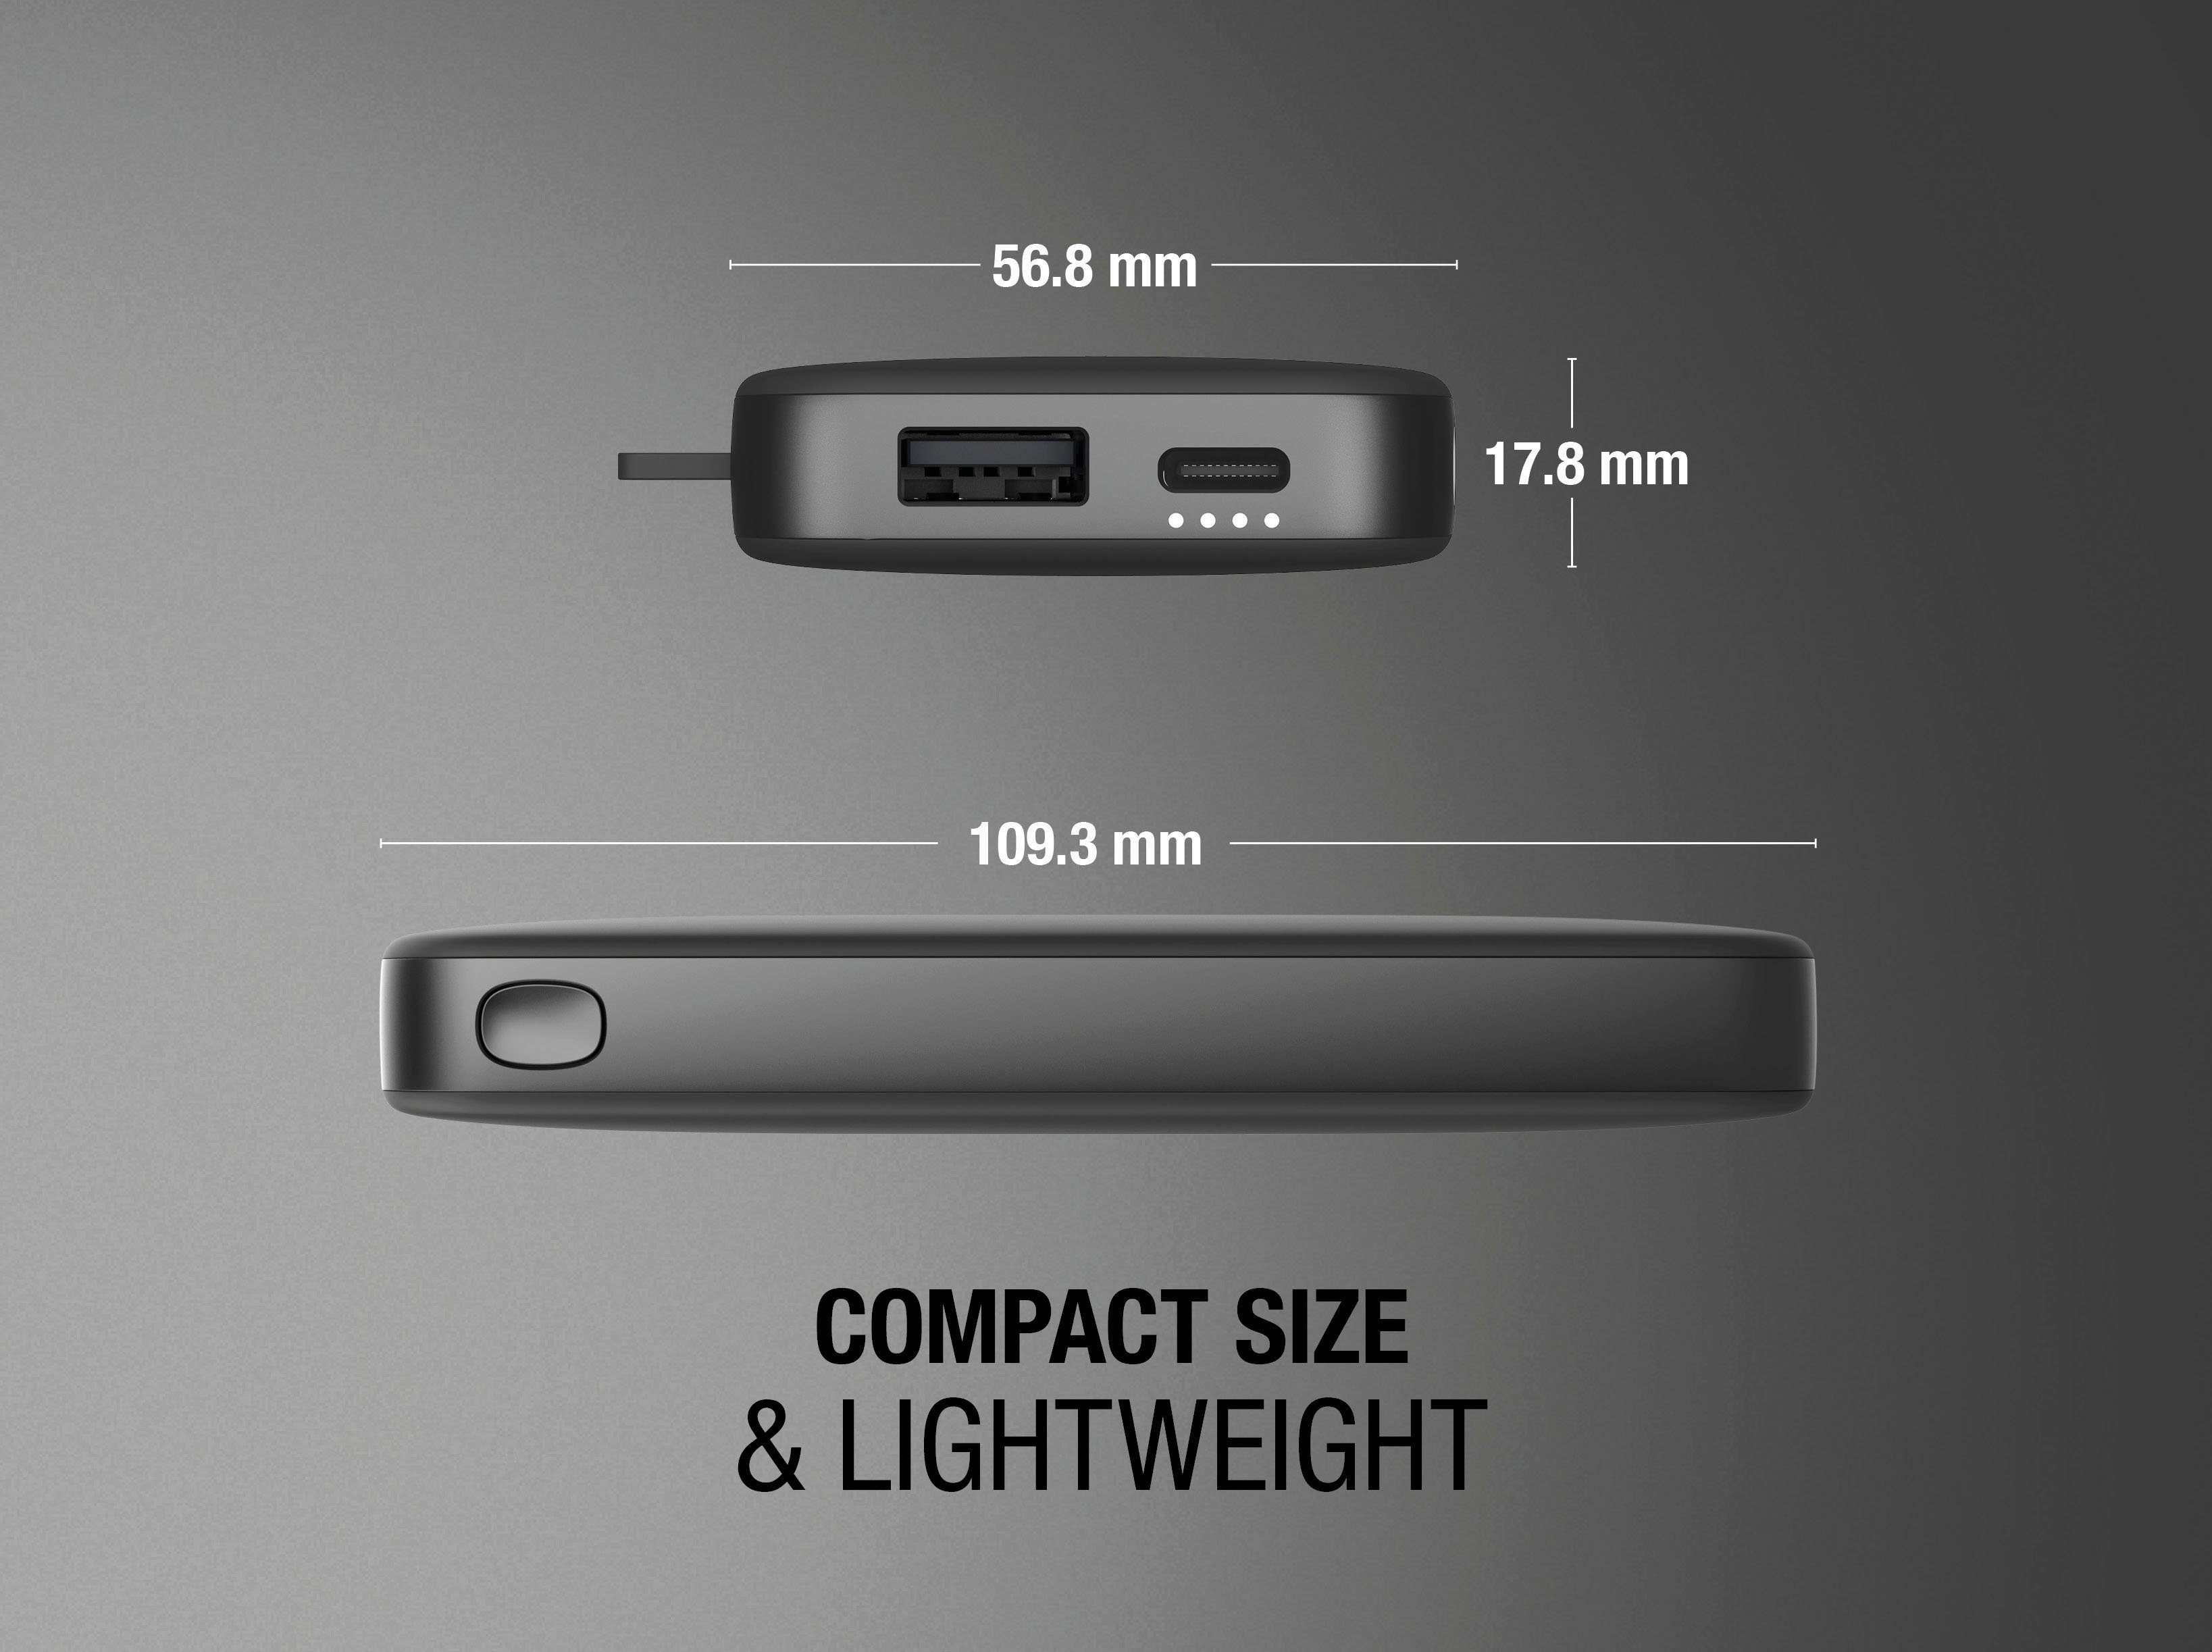 6000mAh (5 Fresh´n Rebel Pack Fast V) grau Charge mit Powerbank USB-C, Power